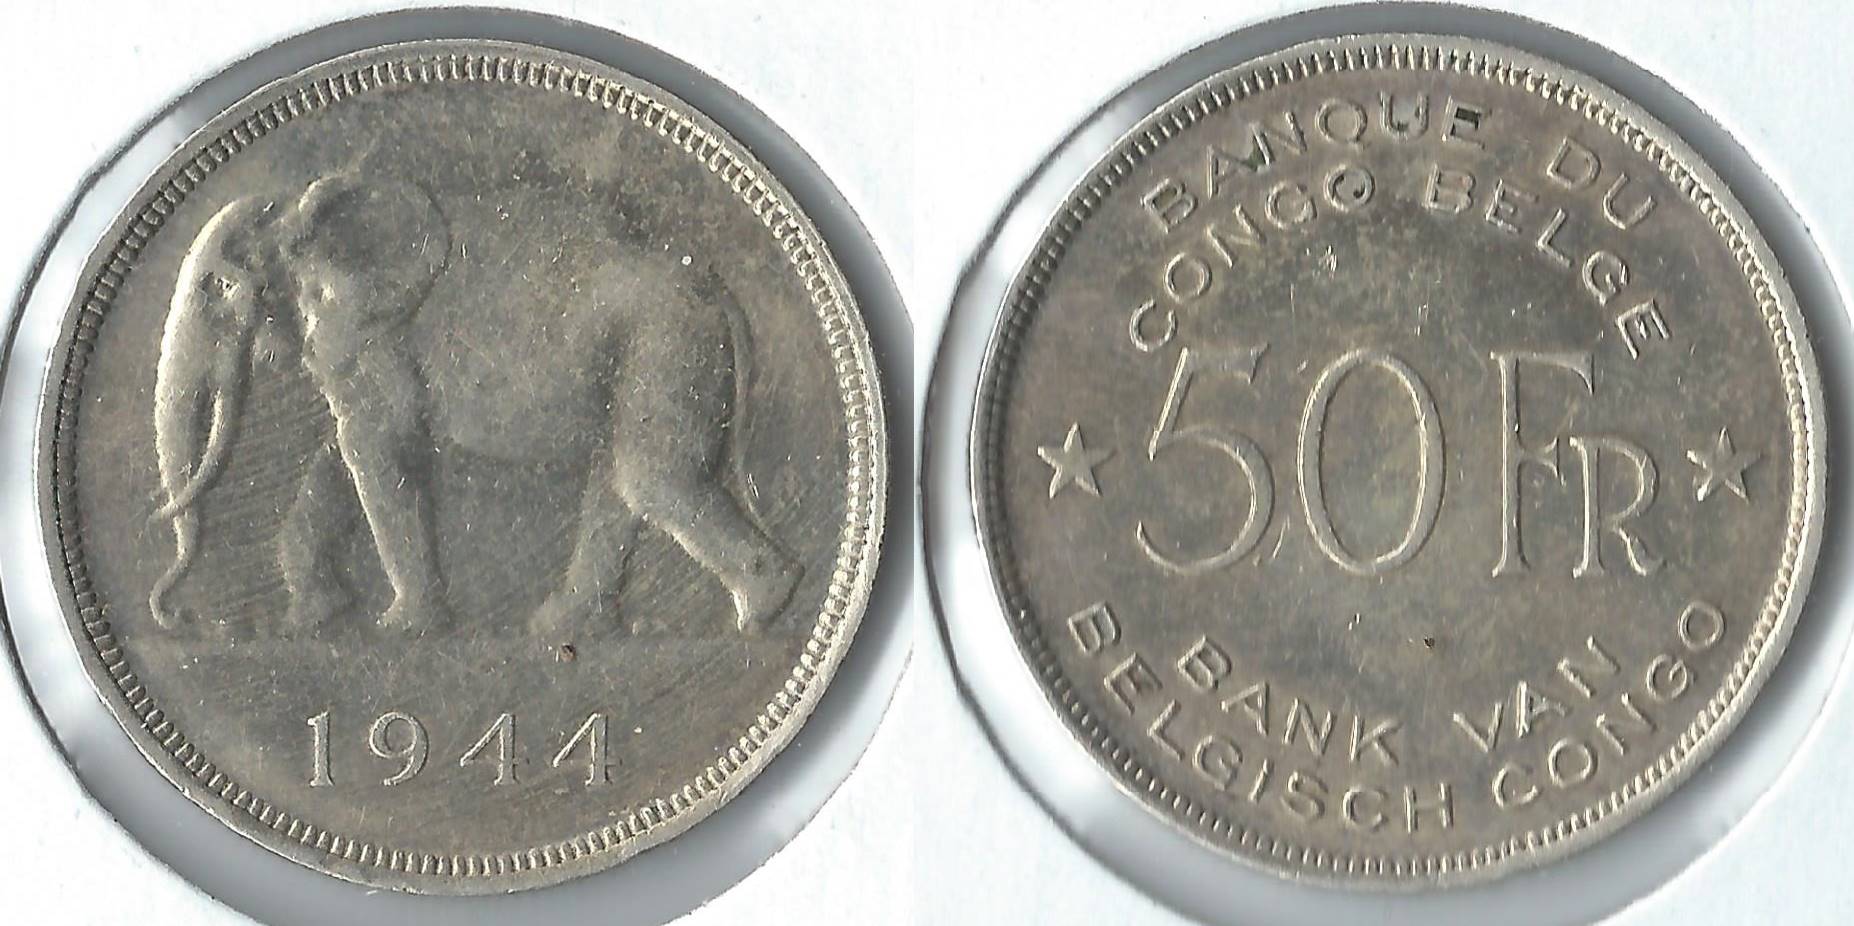 1944 congo 50 francs.jpg